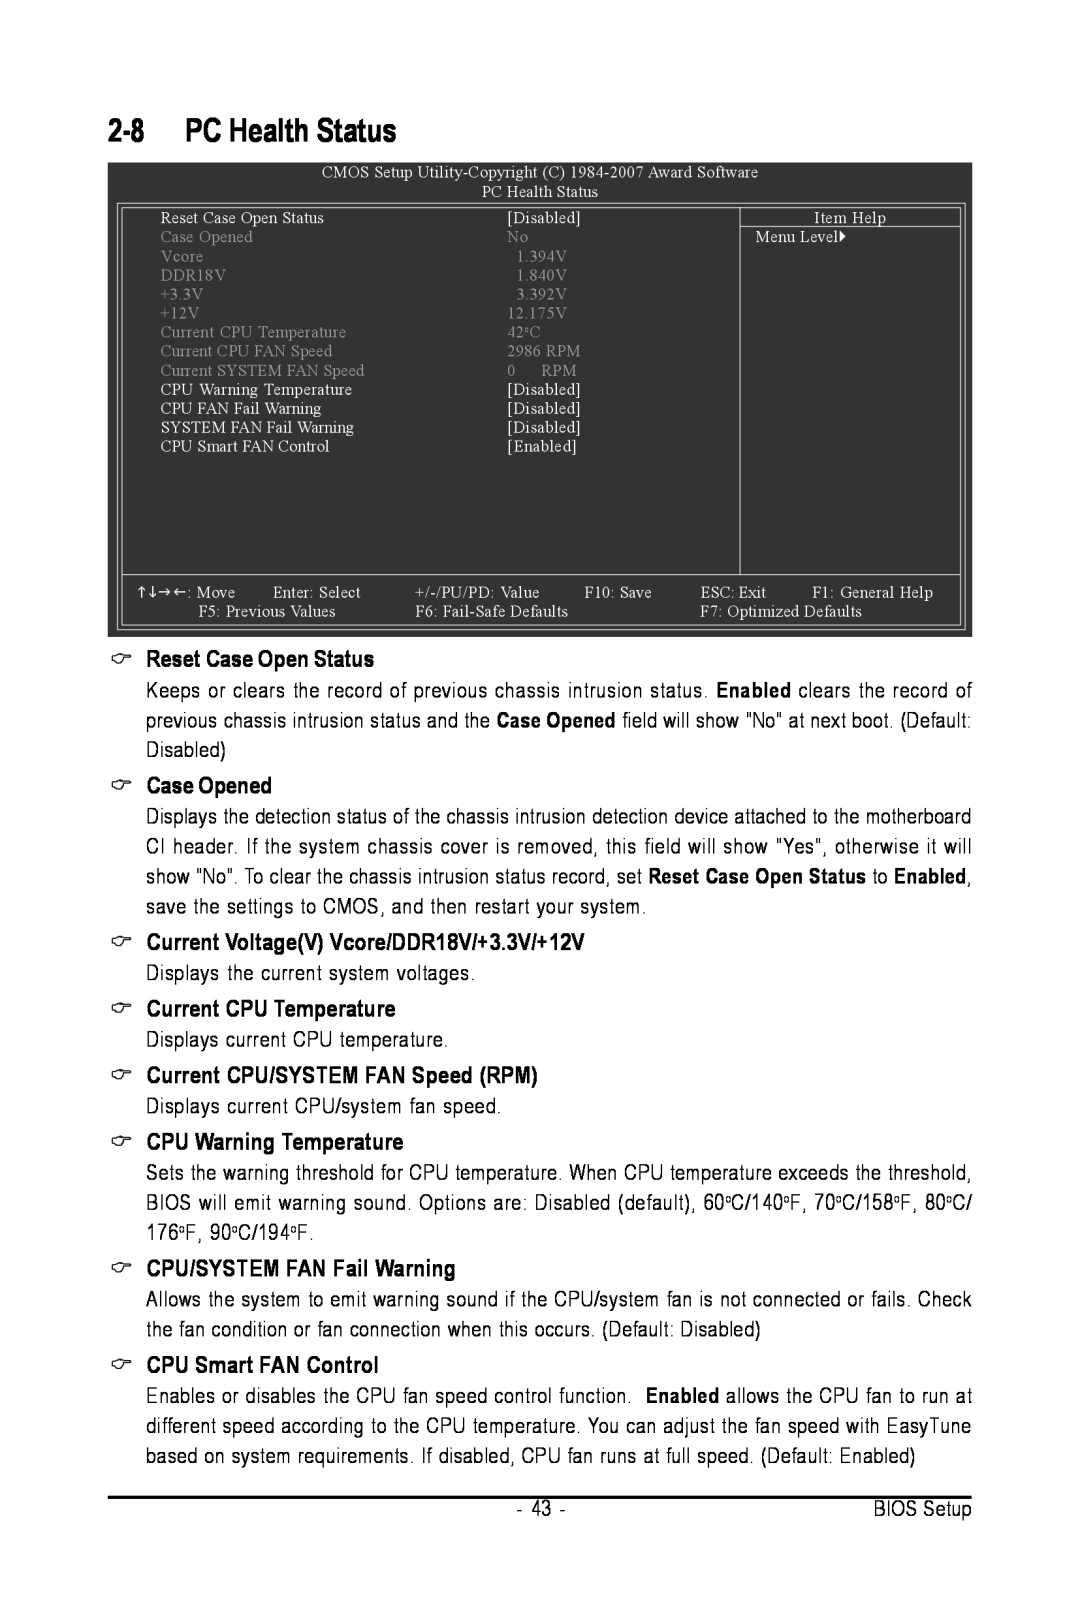 Intel GA-945PL-S3G PC Health Status, Reset Case Open Status, Case Opened, Current VoltageV Vcore/DDR18V/+3.3V/+12V 